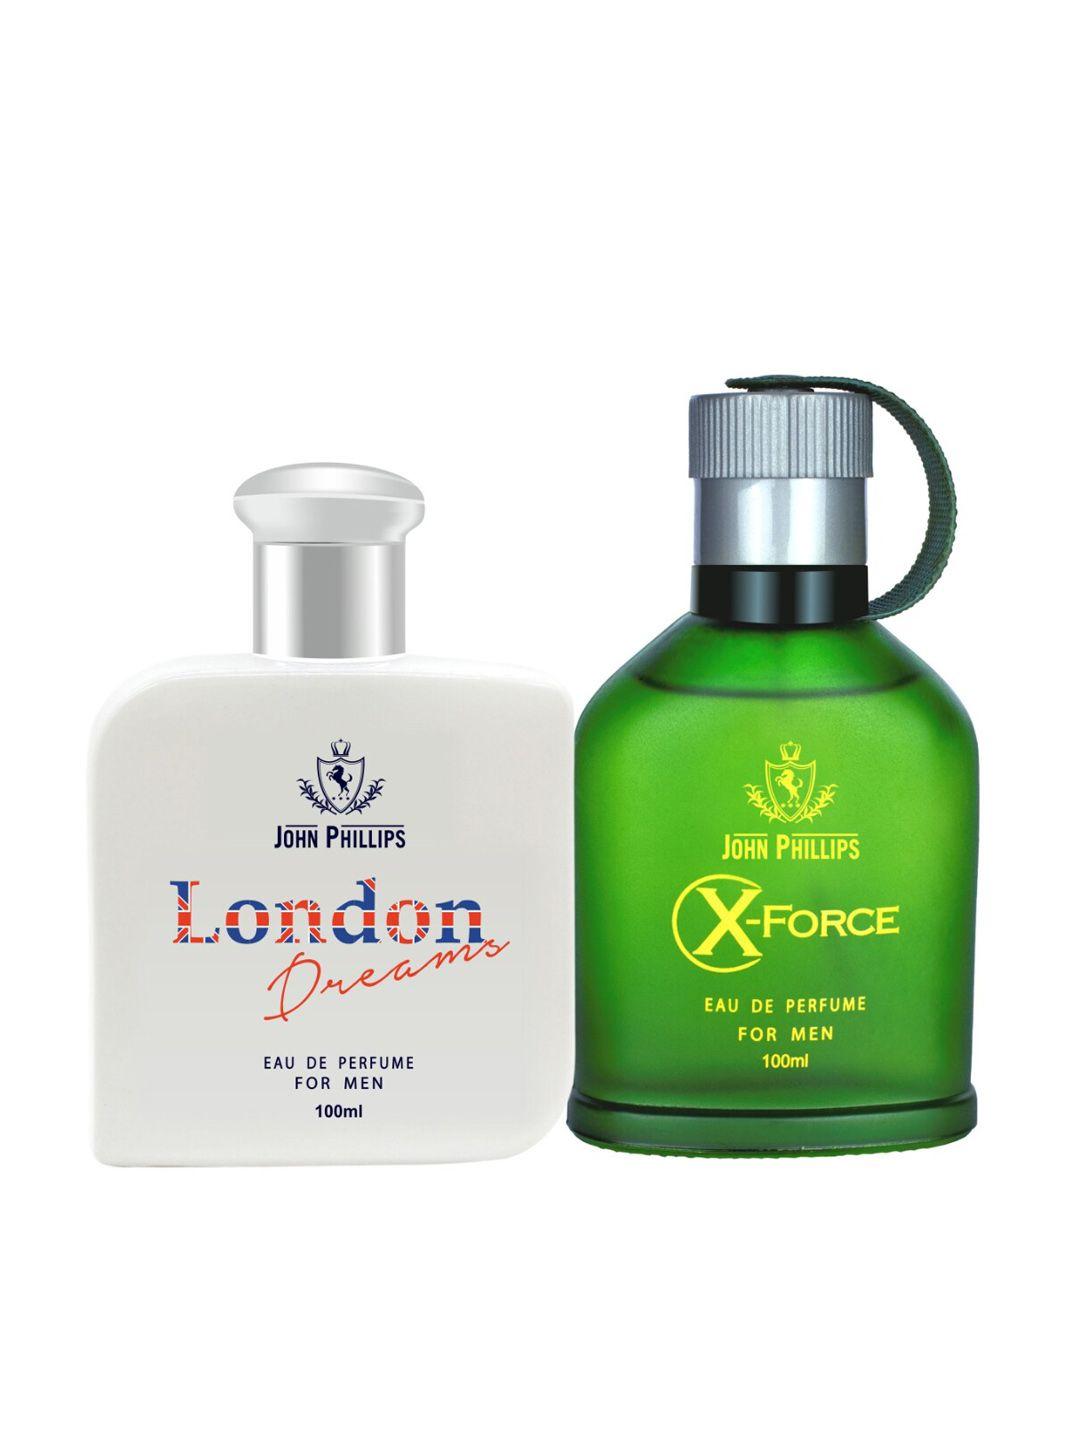 john-phillips-london-dreams-&-x-force-2-pcs-long-lasting-eau-de-parfum--100-ml-each